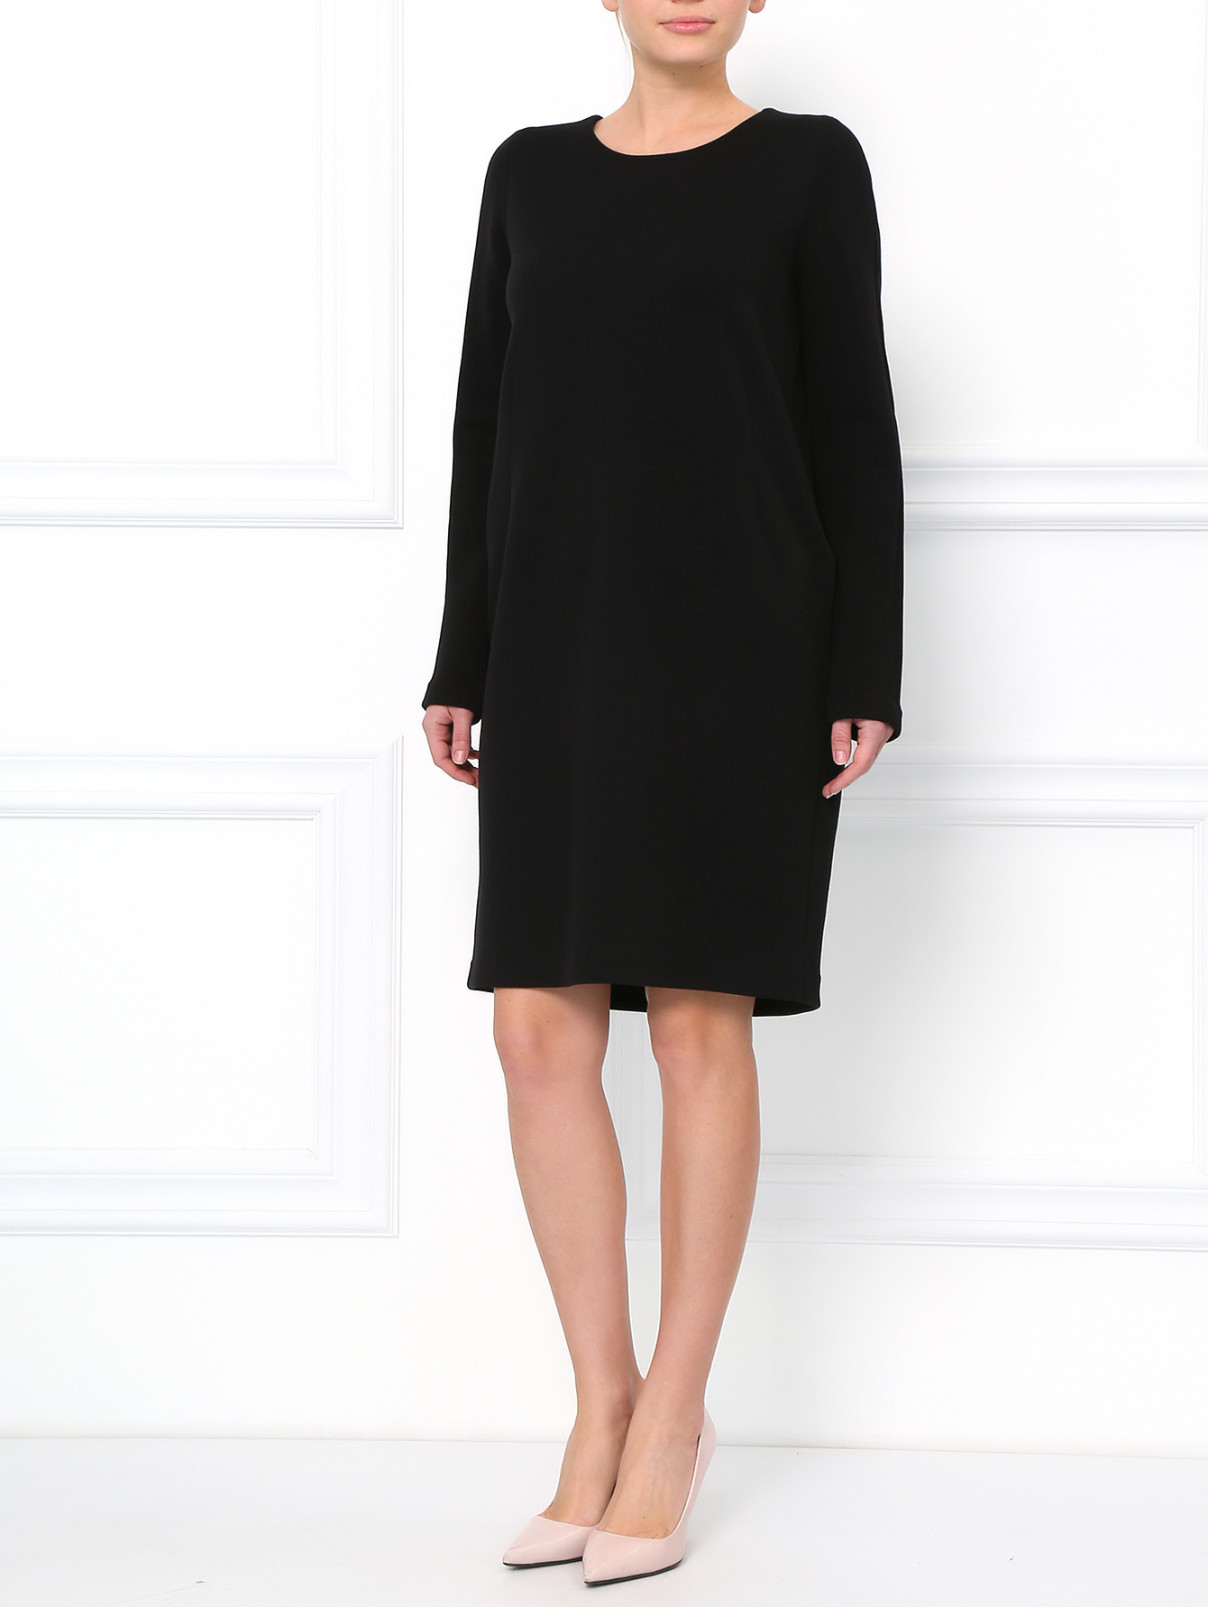 Свободное платье из шерсти Jil Sander  –  Модель Общий вид  – Цвет:  Черный